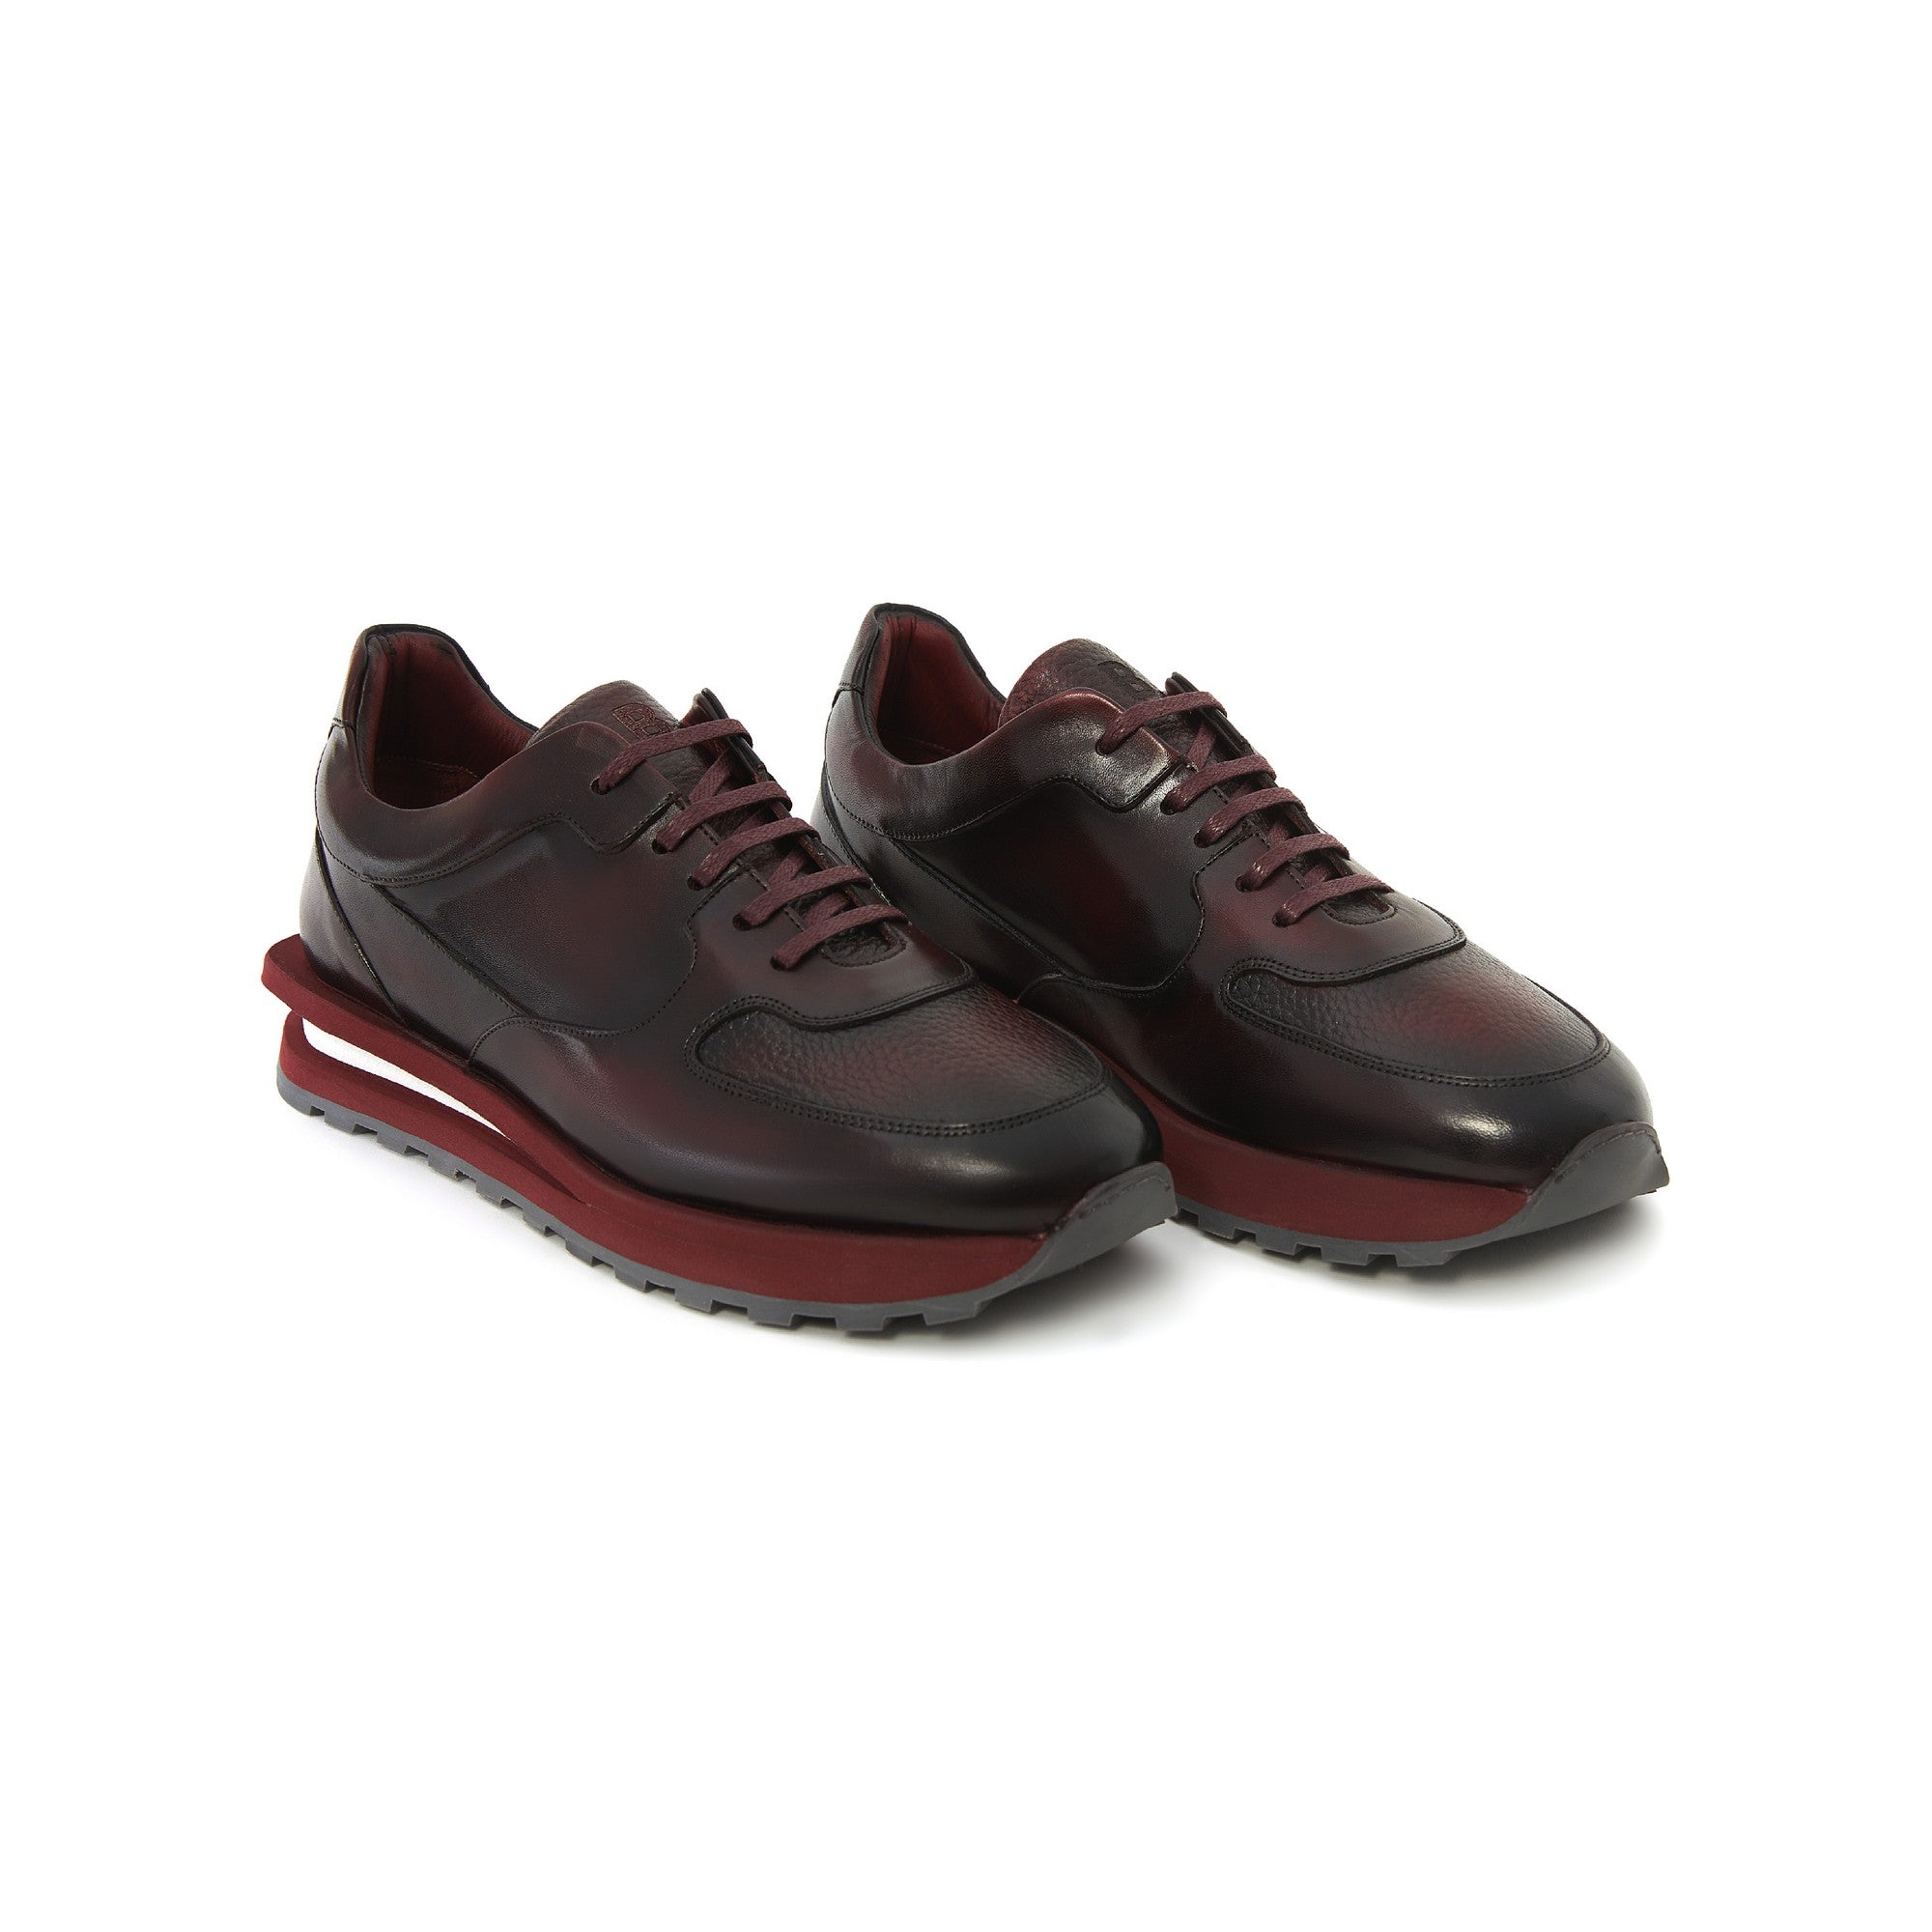 Men's Calf Leather Handmade Sneakers M8016